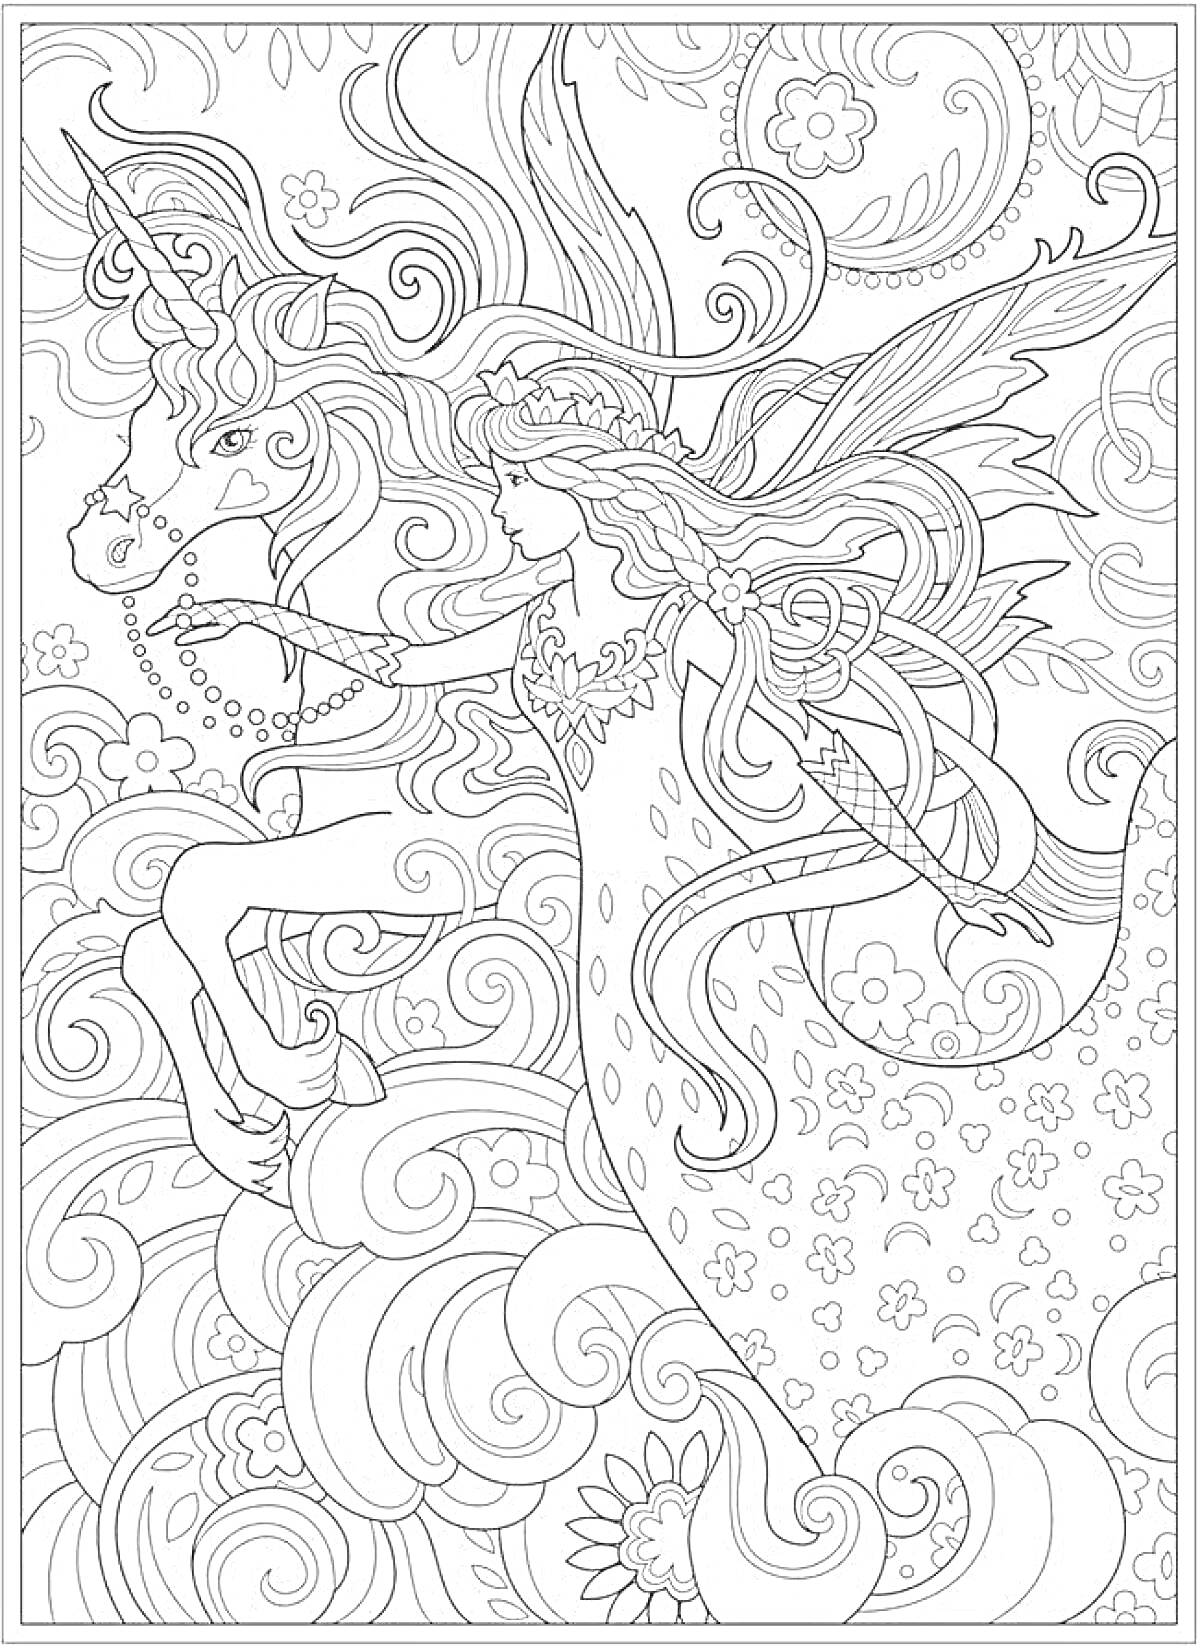 Раскраска Единорог и фея на волнистом фоне с цветами